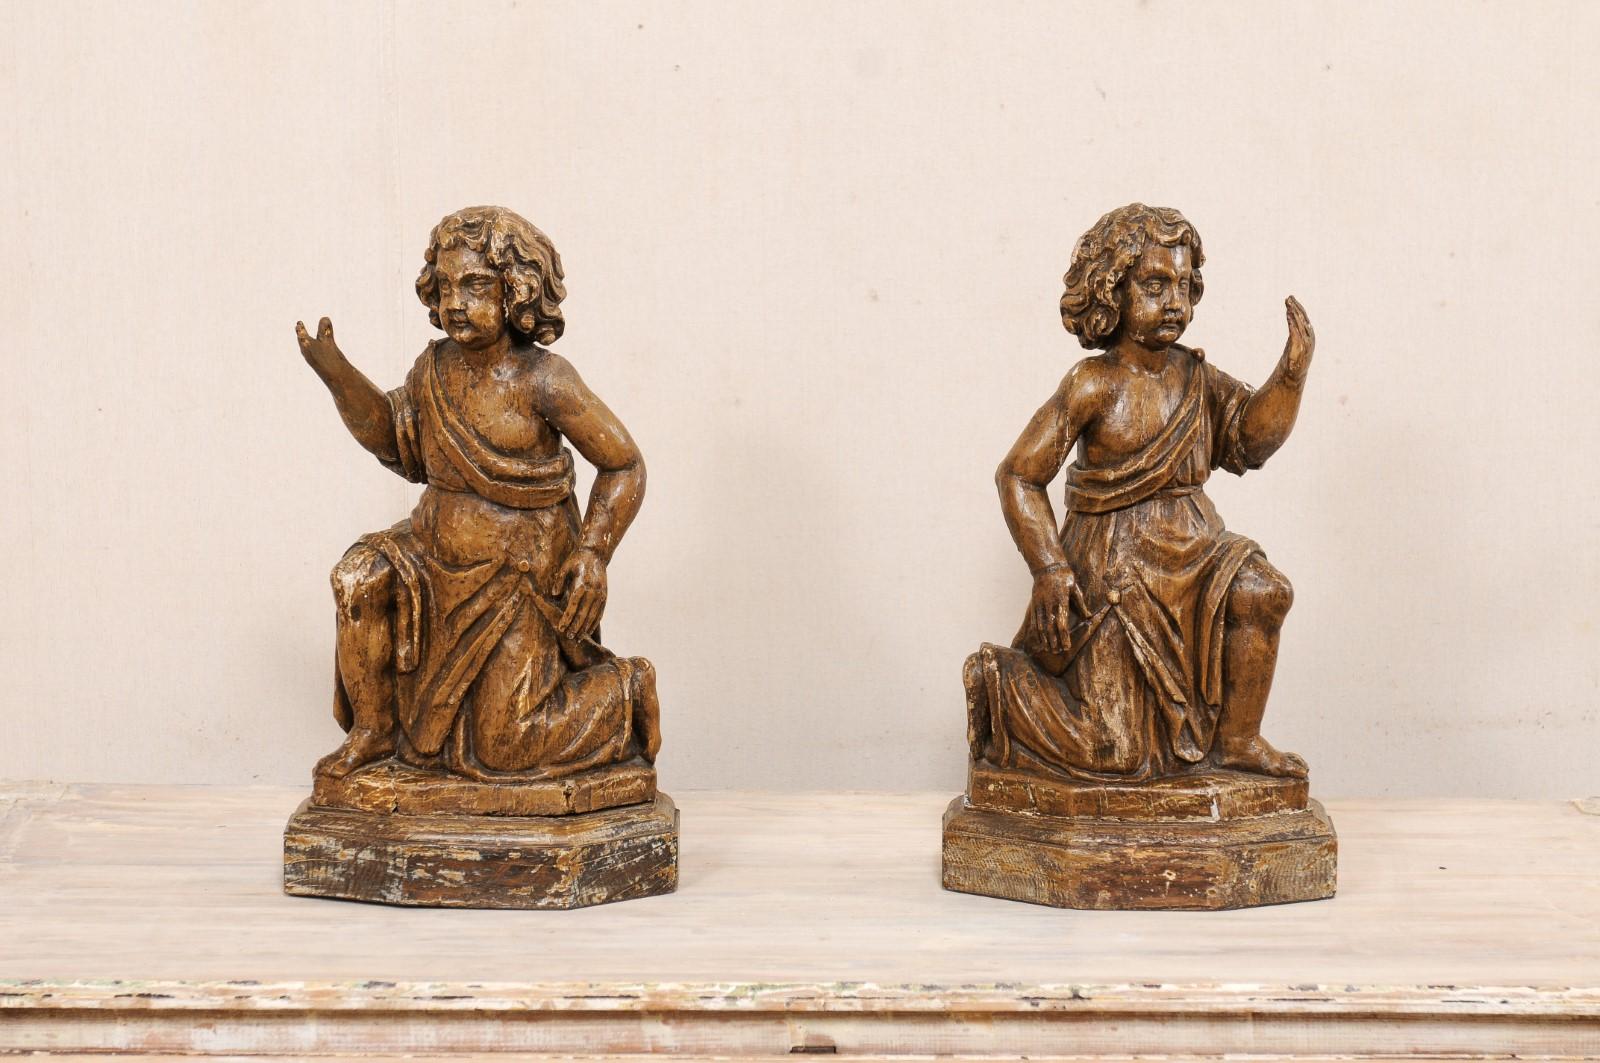 Paire de chérubins en bois sculpté du XIXe siècle. Cette paire antique de figurines en bois provenant de France a été sculptée à la main pour représenter un enfant de sexe masculin (ou putto) aux cheveux bouclés et aux joues potelées, vêtu d'une